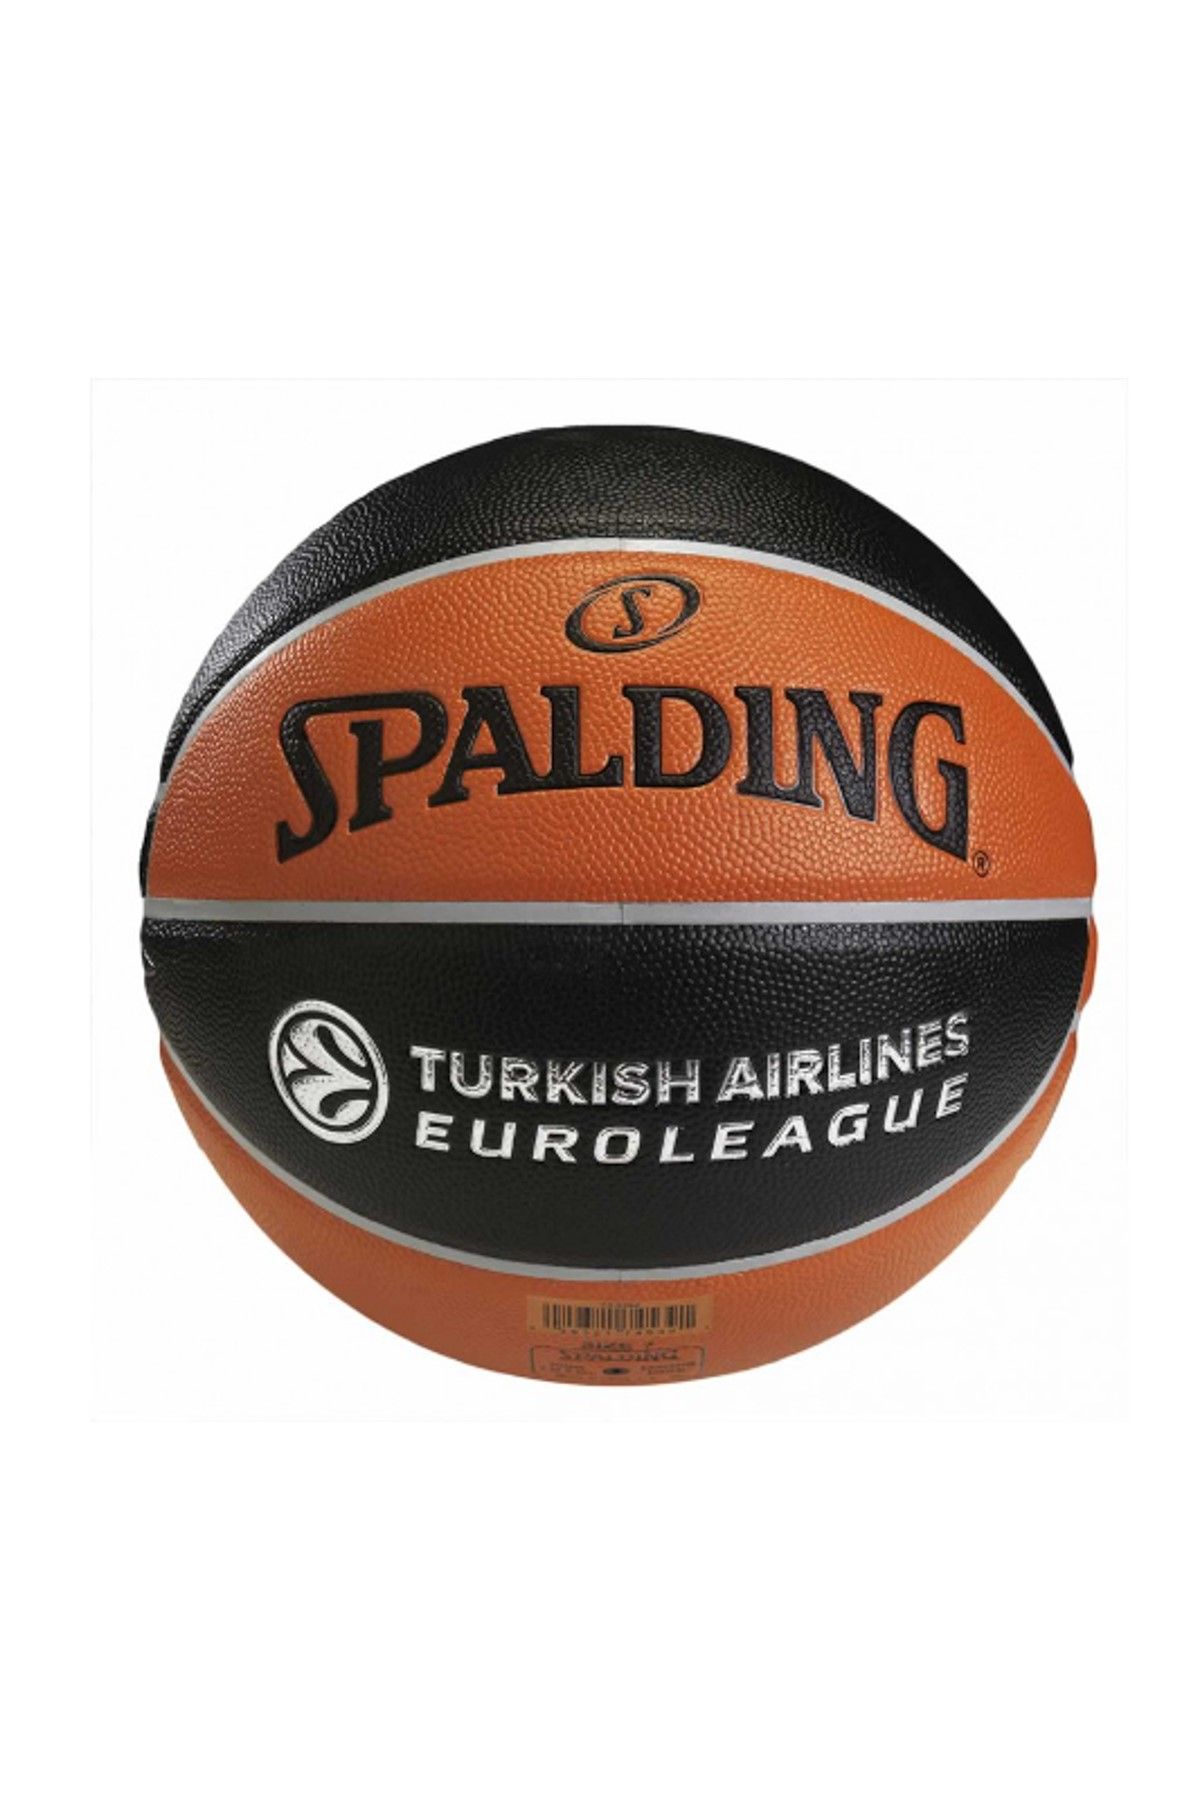 Spalding Basketbol Topu - 5 Numaralı  - TOPBSKSPA231